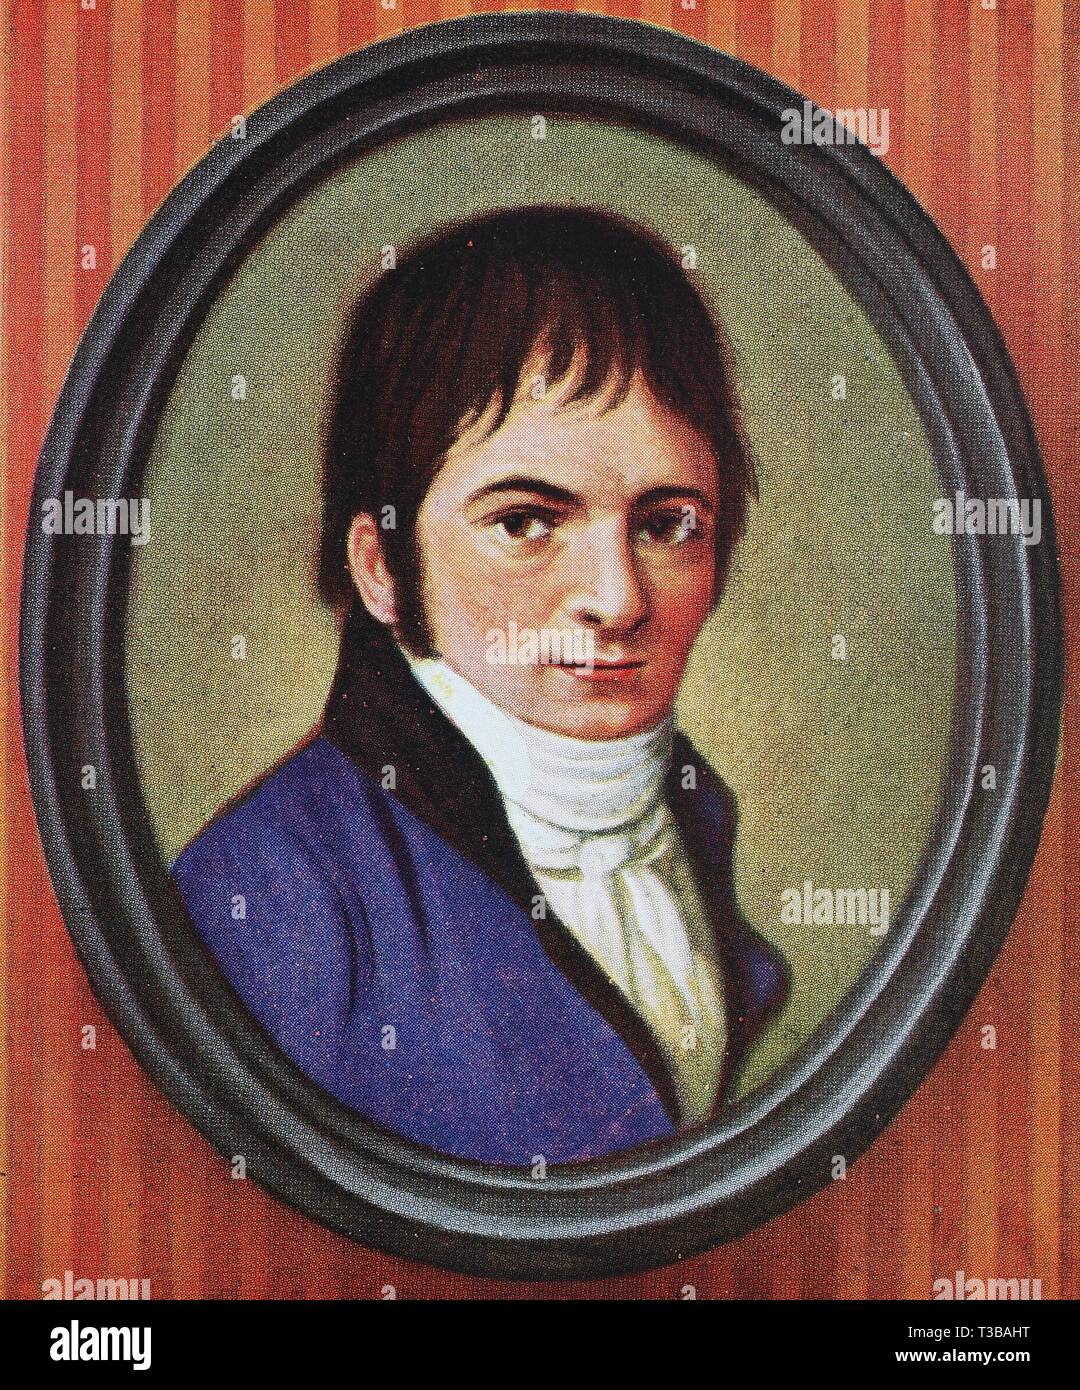 Ludwig van Beethoven, 1770-1827, un compositeur et pianiste allemand, illustration historique, 1880, Germany, Europe Banque D'Images